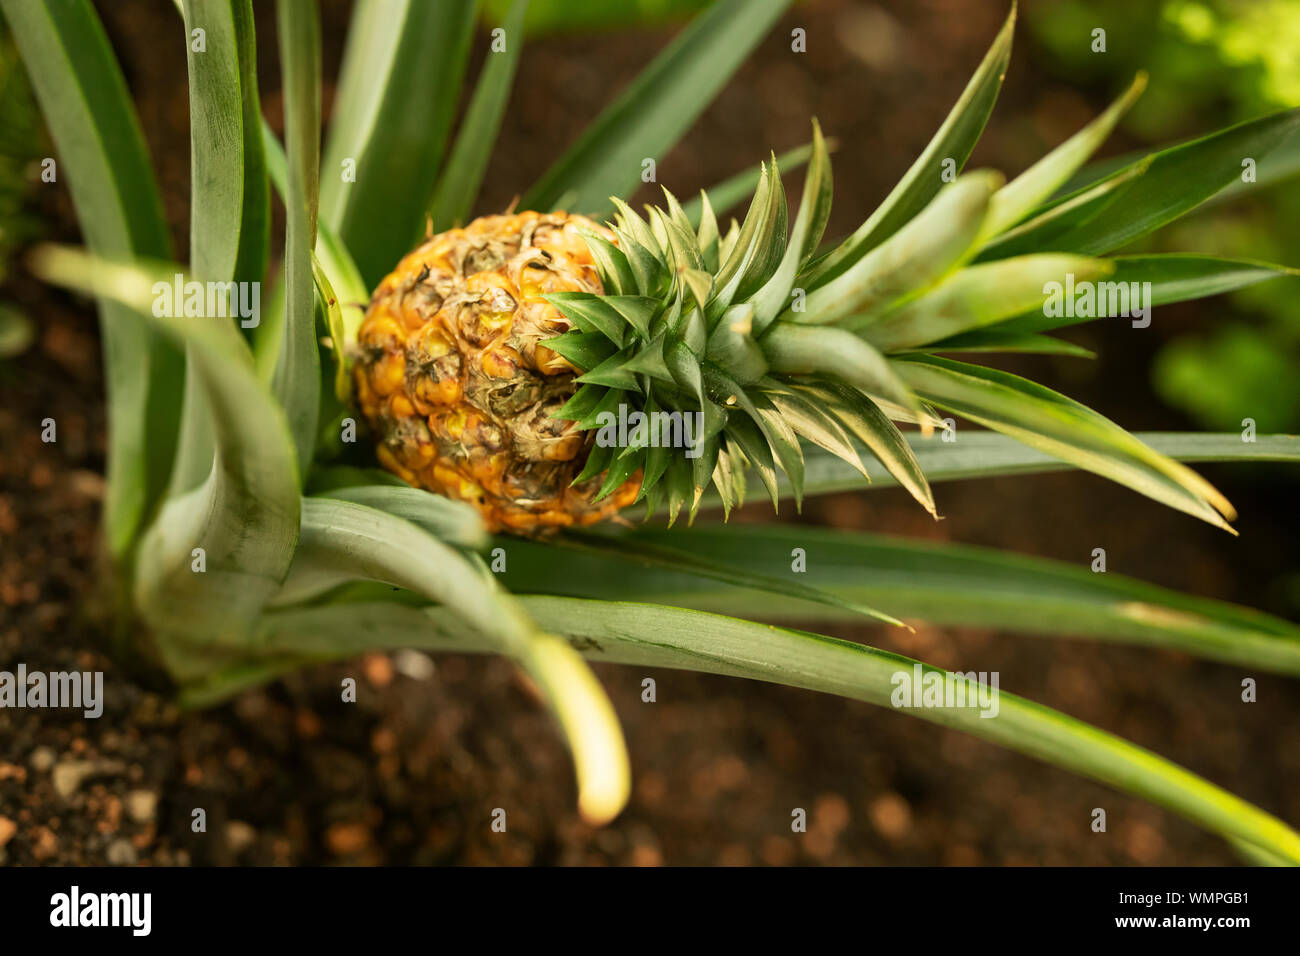 A pineapple (Ananas comosus) growing in a tropical garden. Stock Photo